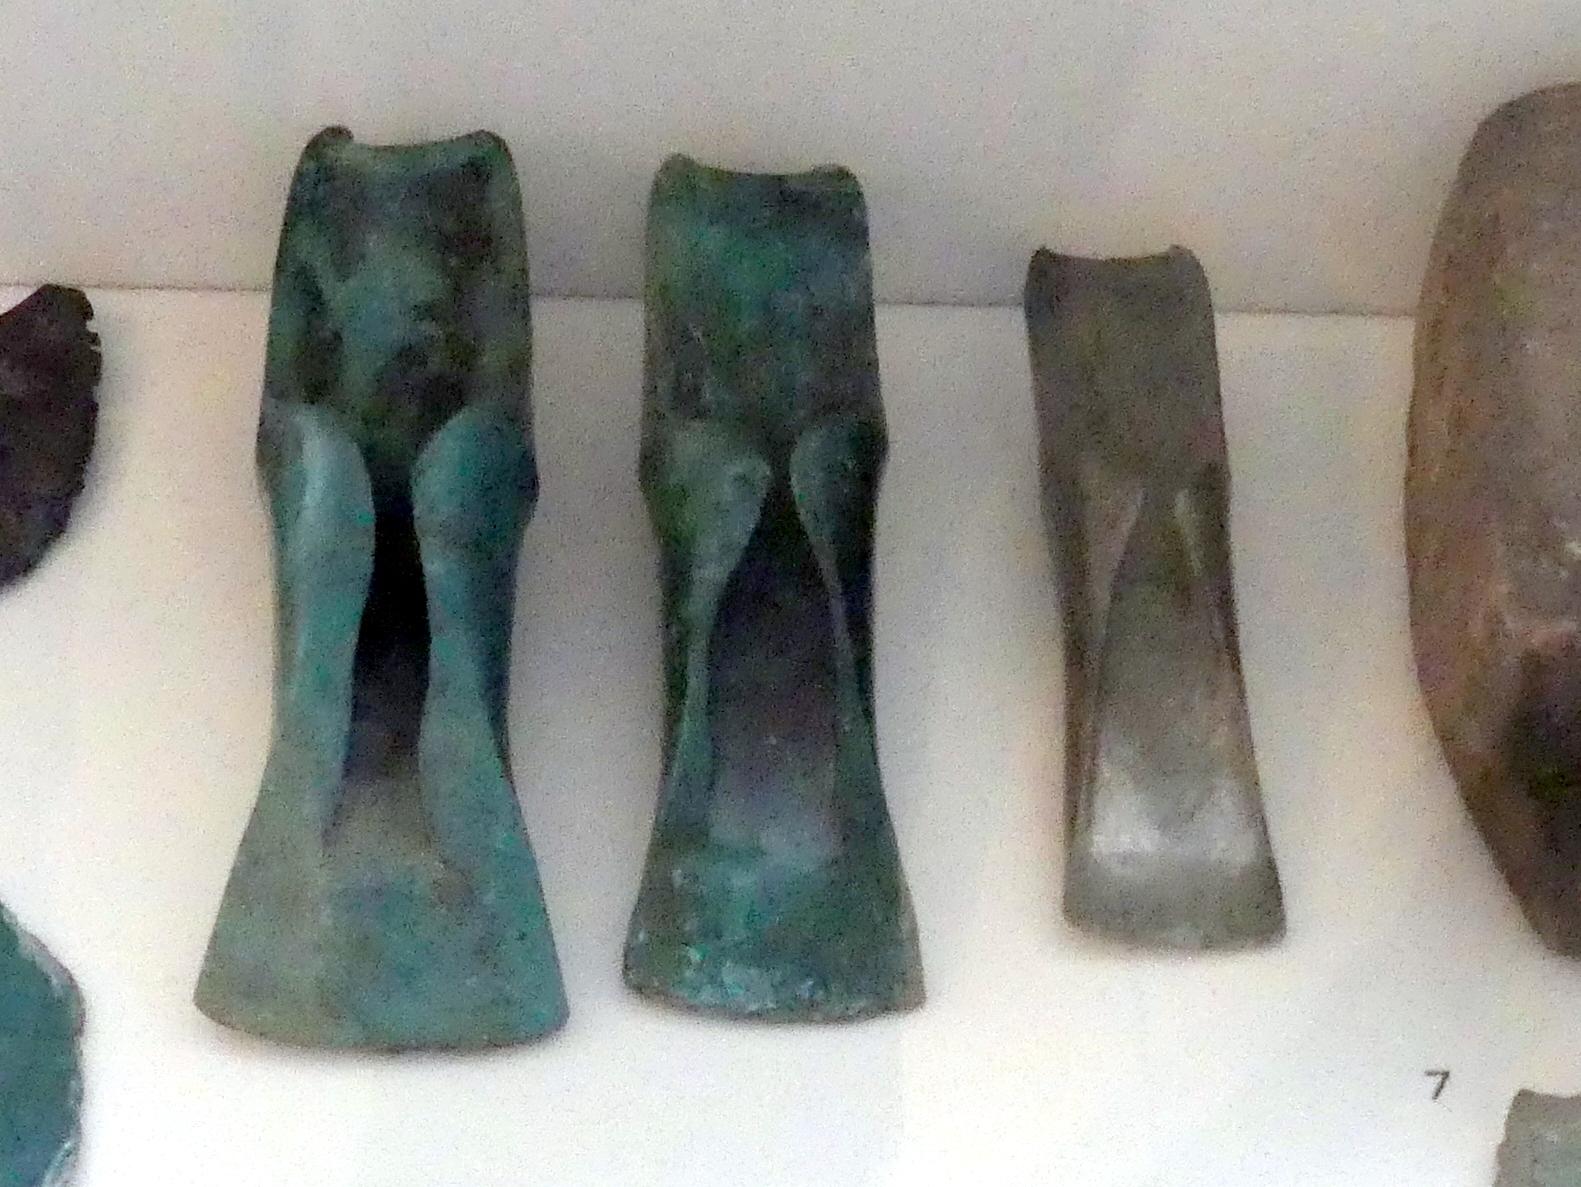 Lappenbeile, Urnenfelderzeit, 1400 - 700 v. Chr., 1300 - 1200 v. Chr.